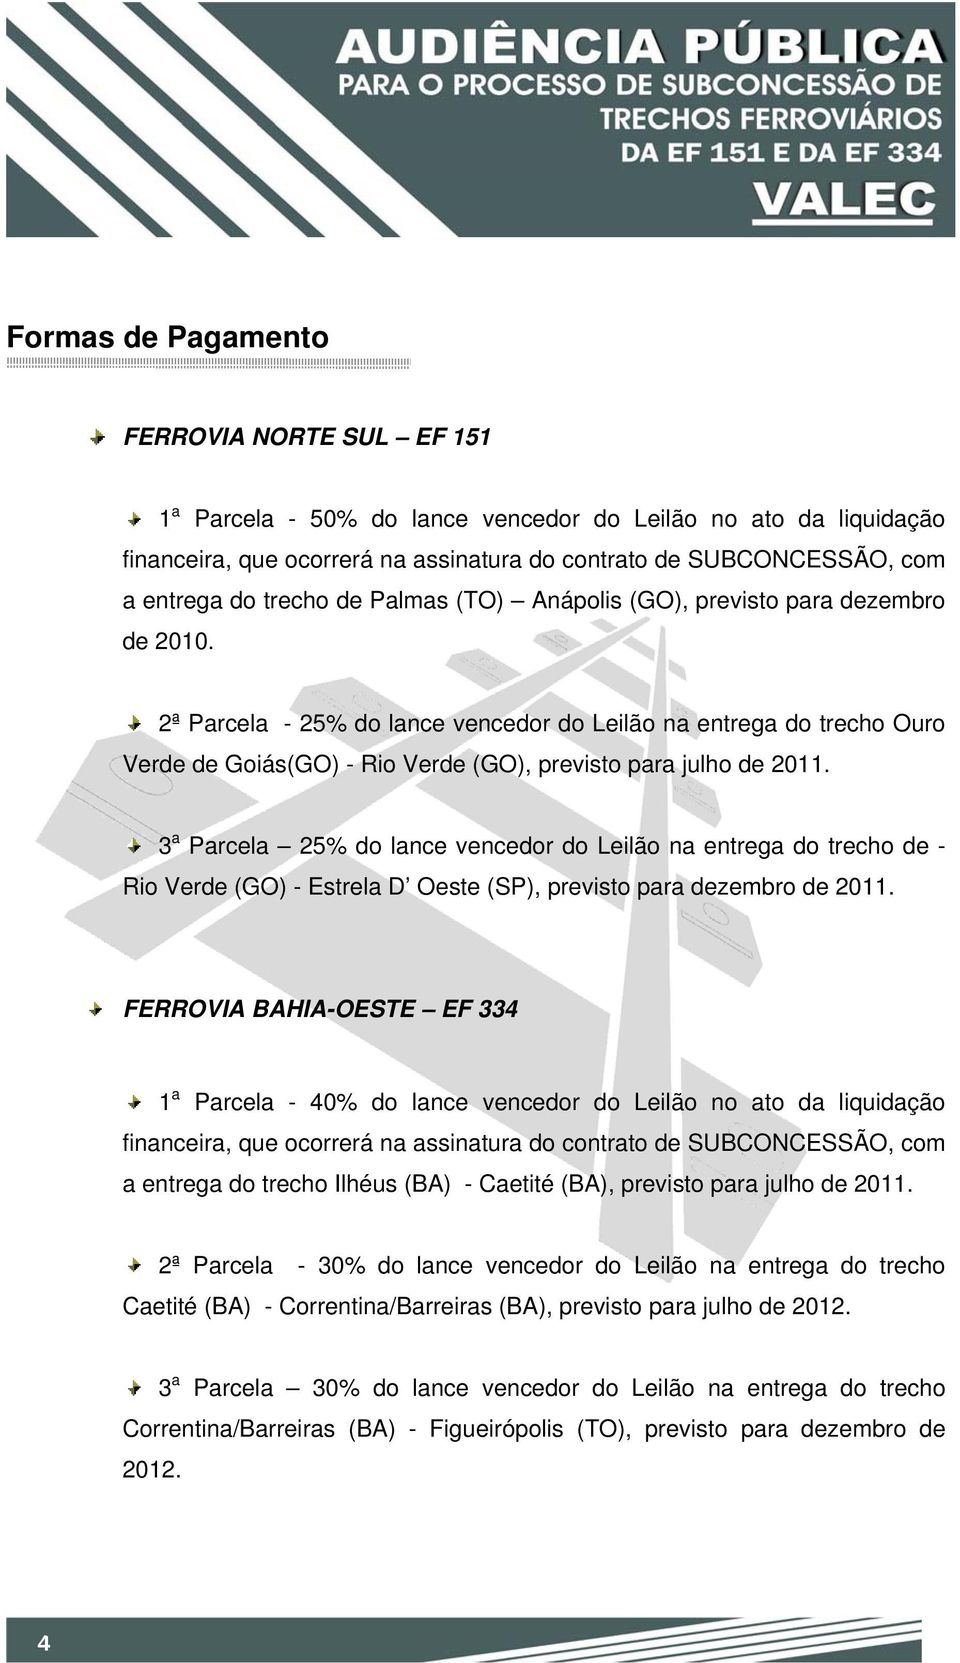 2ª Parcela - 25% do lance vencedor do Leilão na entrega do trecho Ouro Verde de Goiás(GO) - Rio Verde (GO), previsto para julho de 2011.